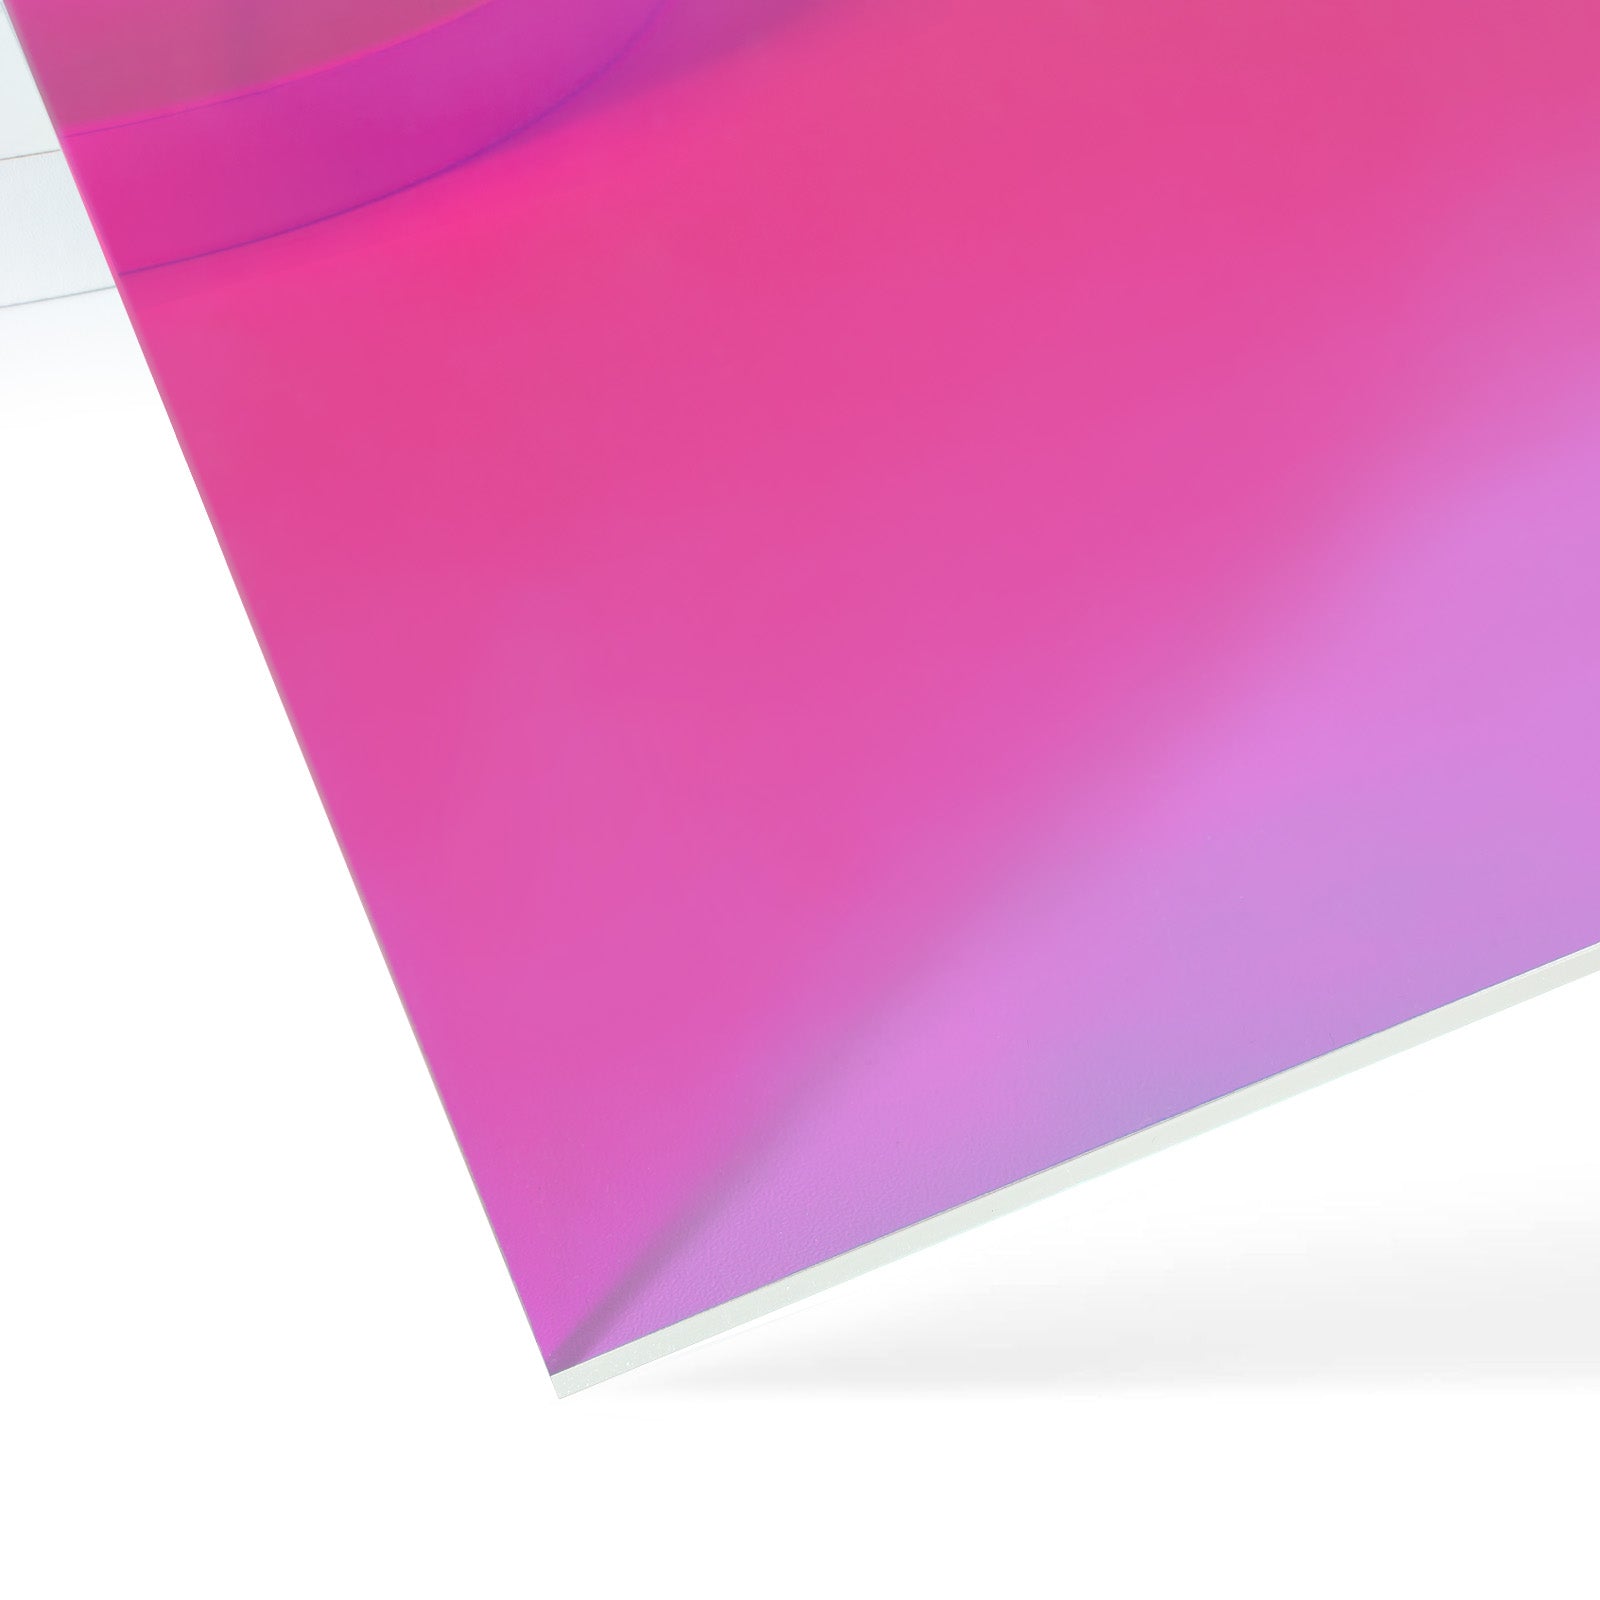 Plexiglas XT incolore lisse 5 mm (2050 x 1520 mm, épaisseur: 5 mm